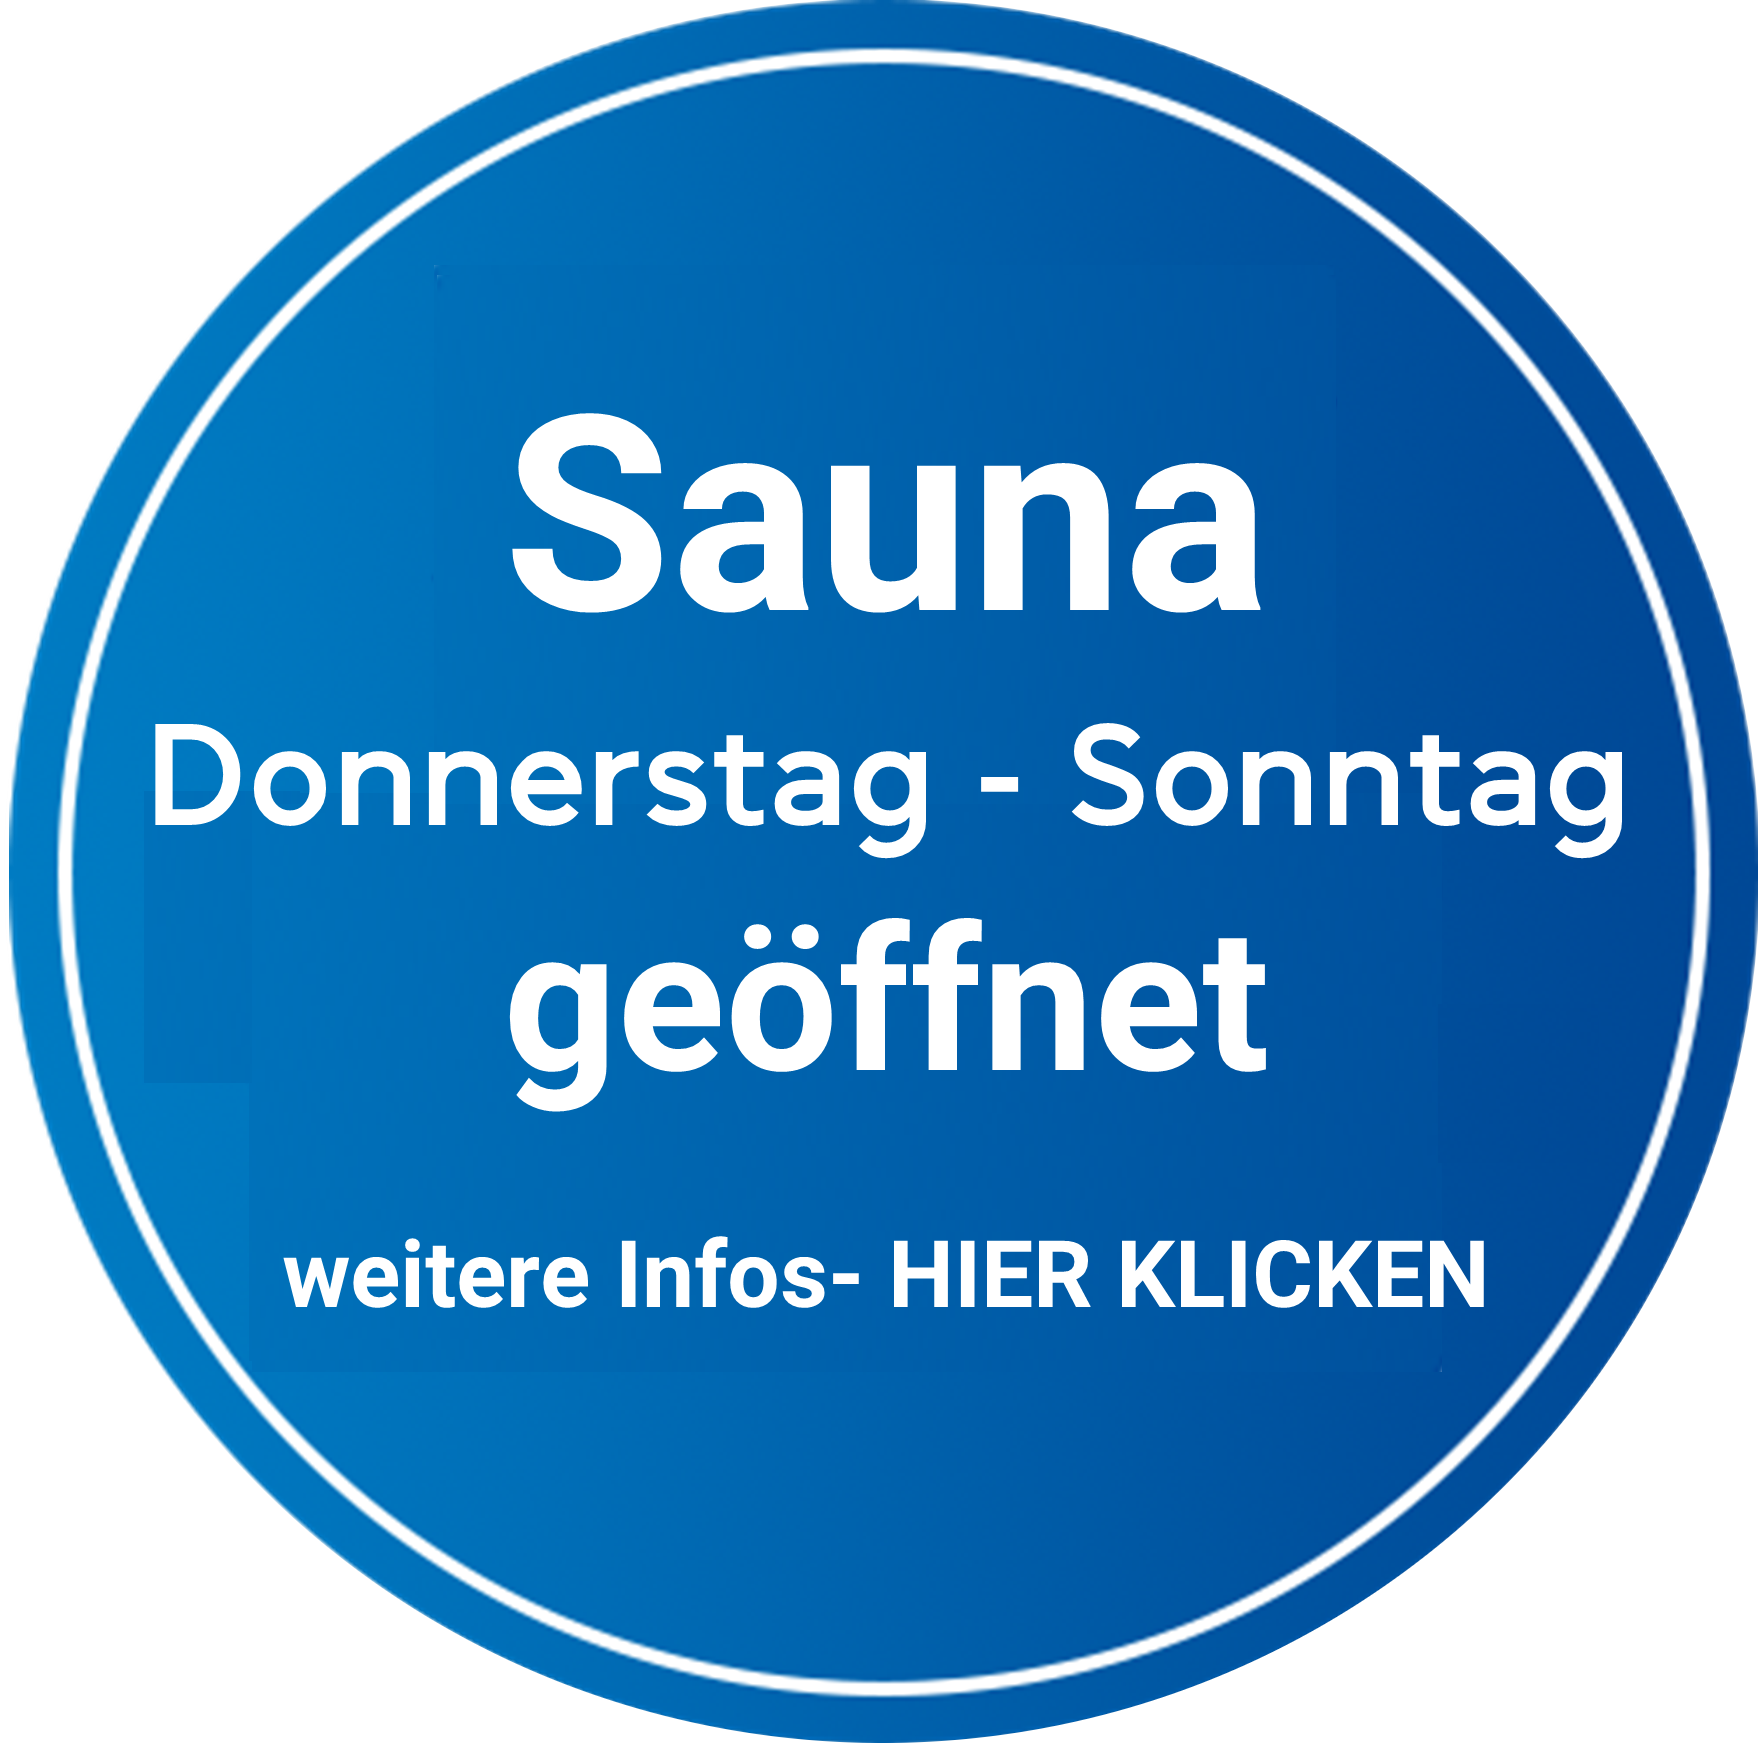 Europatherme in Bad Füssing Sauna Donnerstag - Sonntag geöffnet